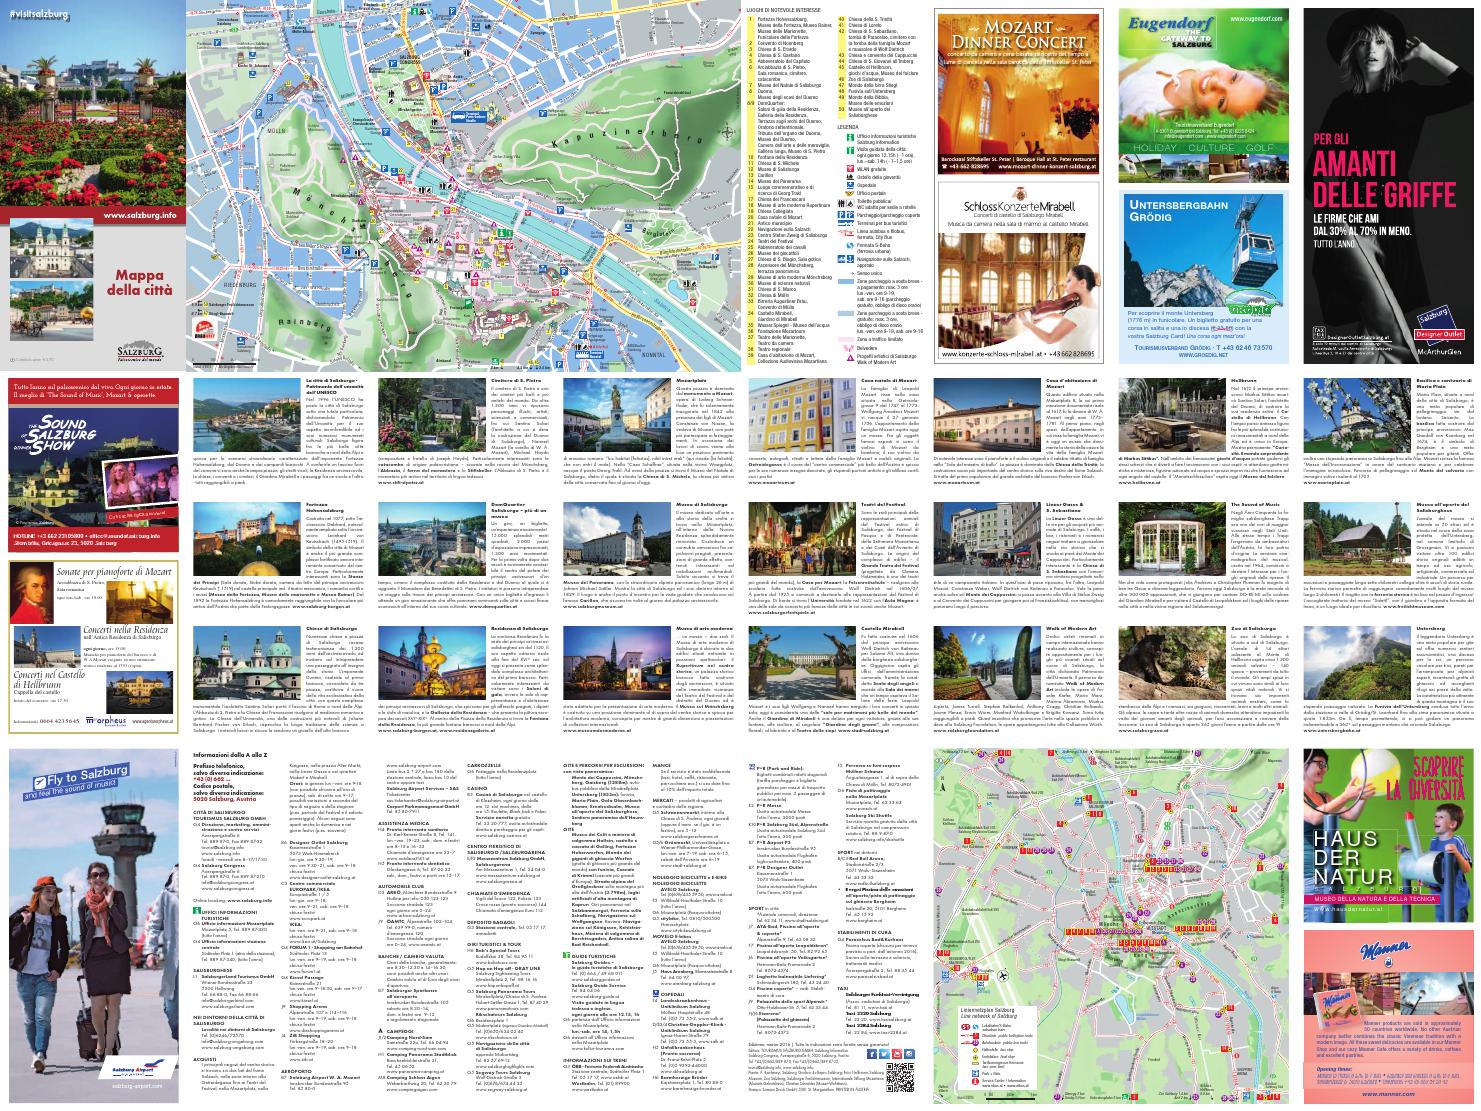 Garten Messe München Schön Salisburgo Mappa Della Citt  2016 by Salzburg issuu